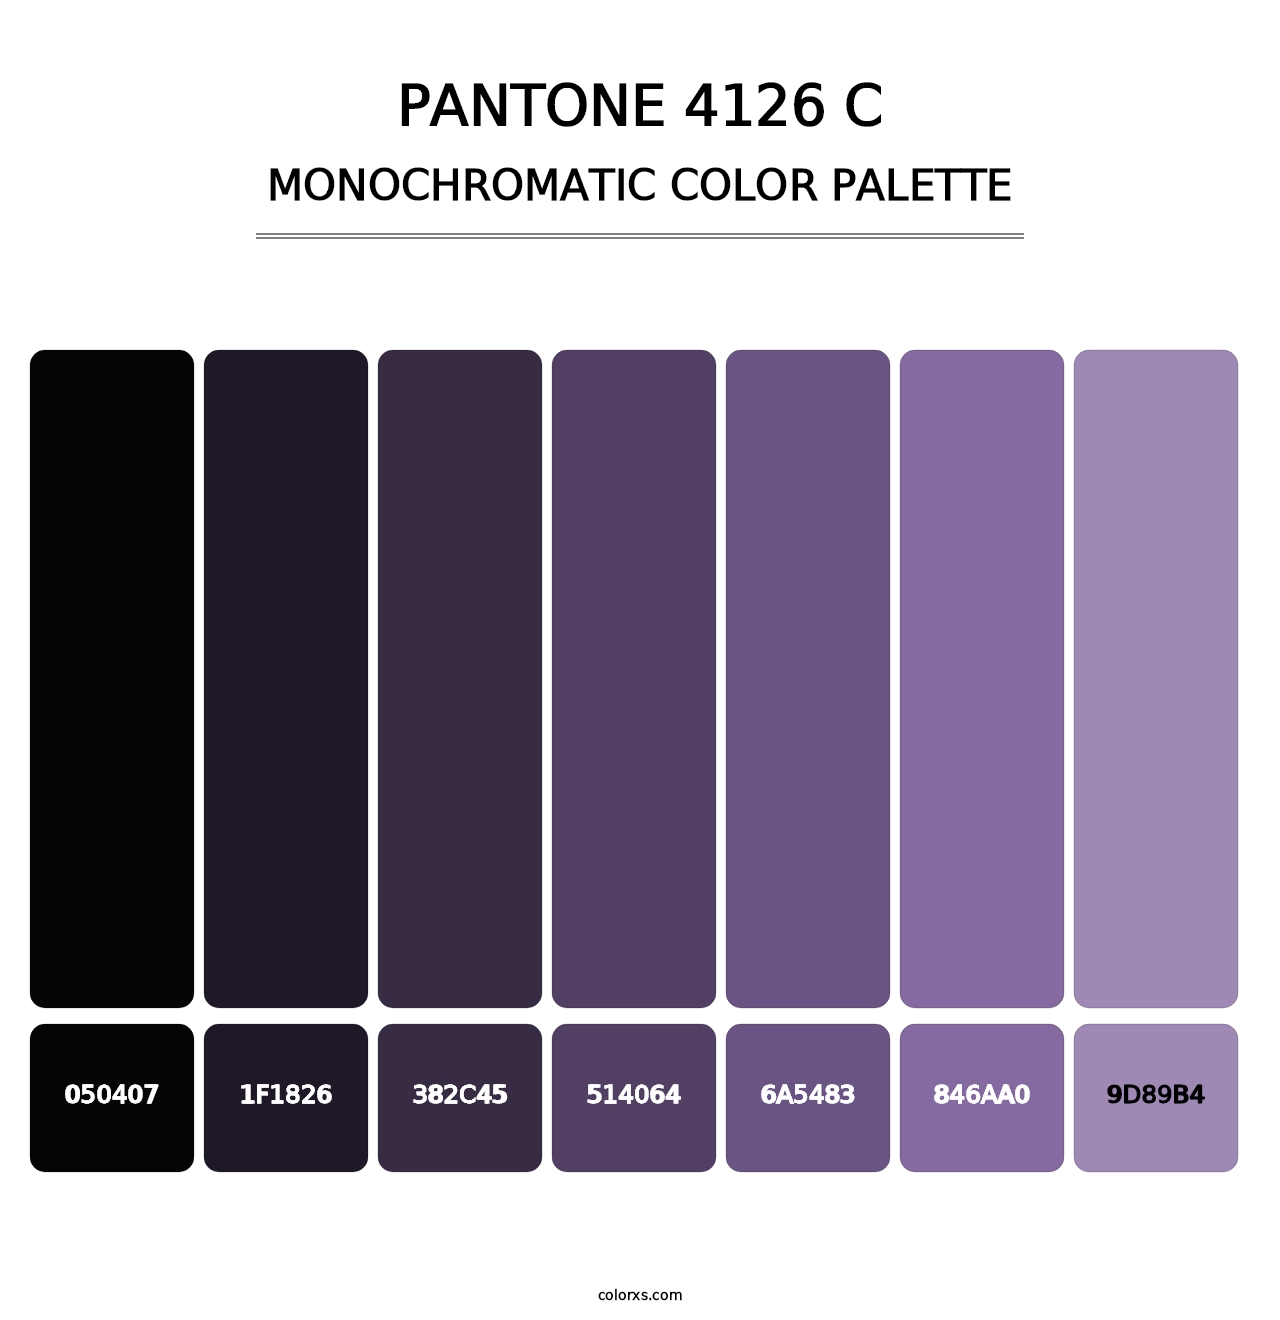 PANTONE 4126 C - Monochromatic Color Palette